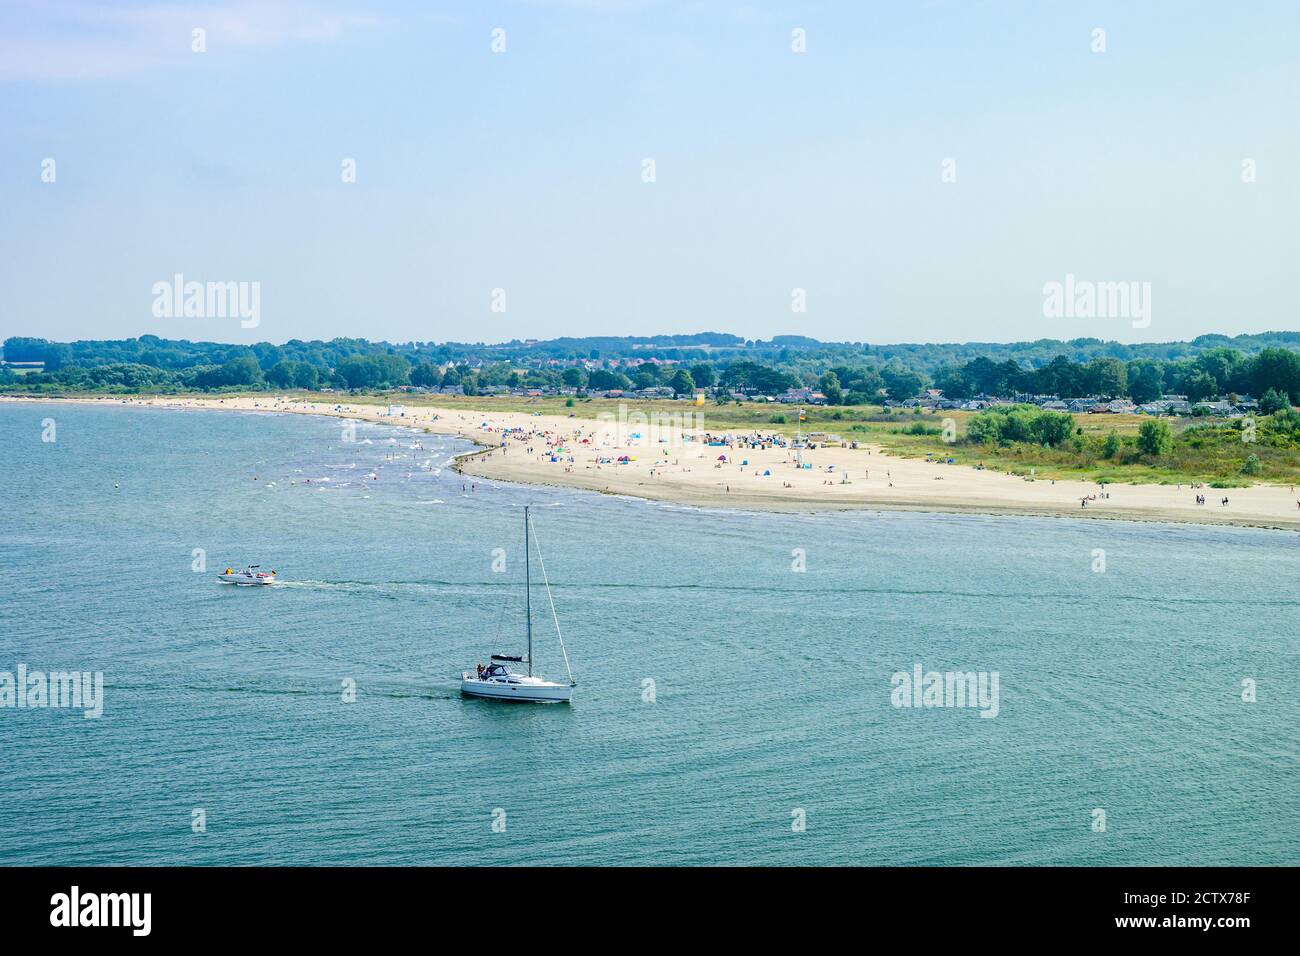 Schöner Blick auf die Bucht, Strand in Lübeck - Travemunde (Travemünde) auf die ostsee. Schleswig-Holstein, Deutschland Stockfoto